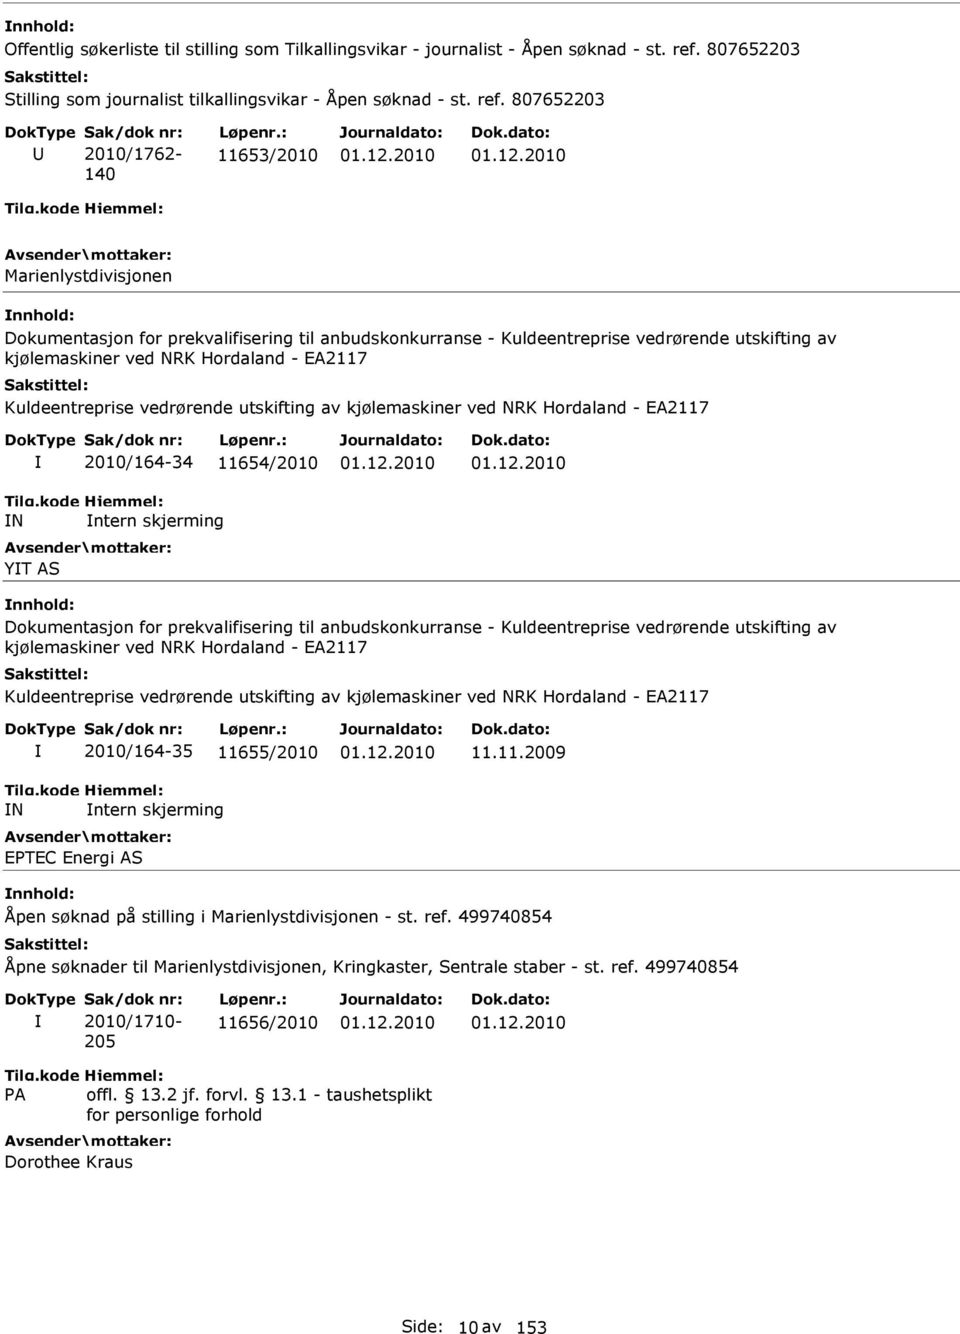 807652203 2010/1762-140 11653/2010 Marienlystdivisjonen Dokumentasjon for prekvalifisering til anbudskonkurranse - Kuldeentreprise vedrørende utskifting av kjølemaskiner ved NRK Hordaland - EA2117